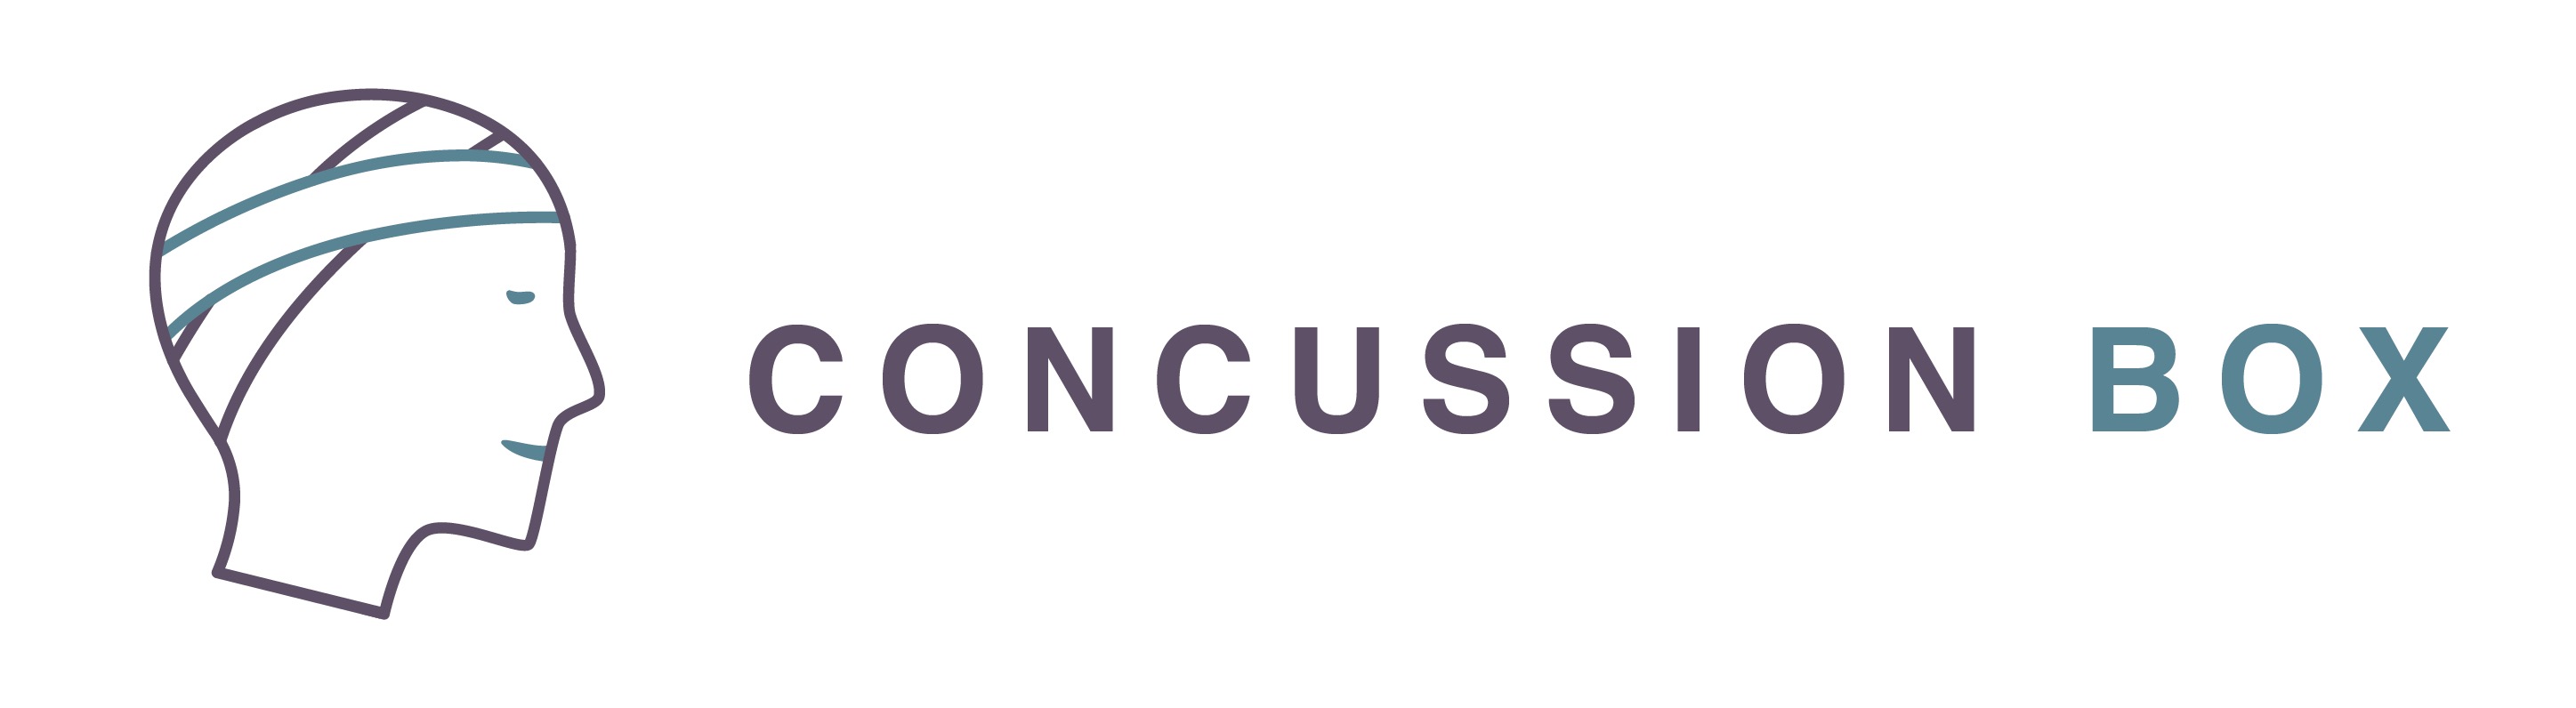 concussion box logo